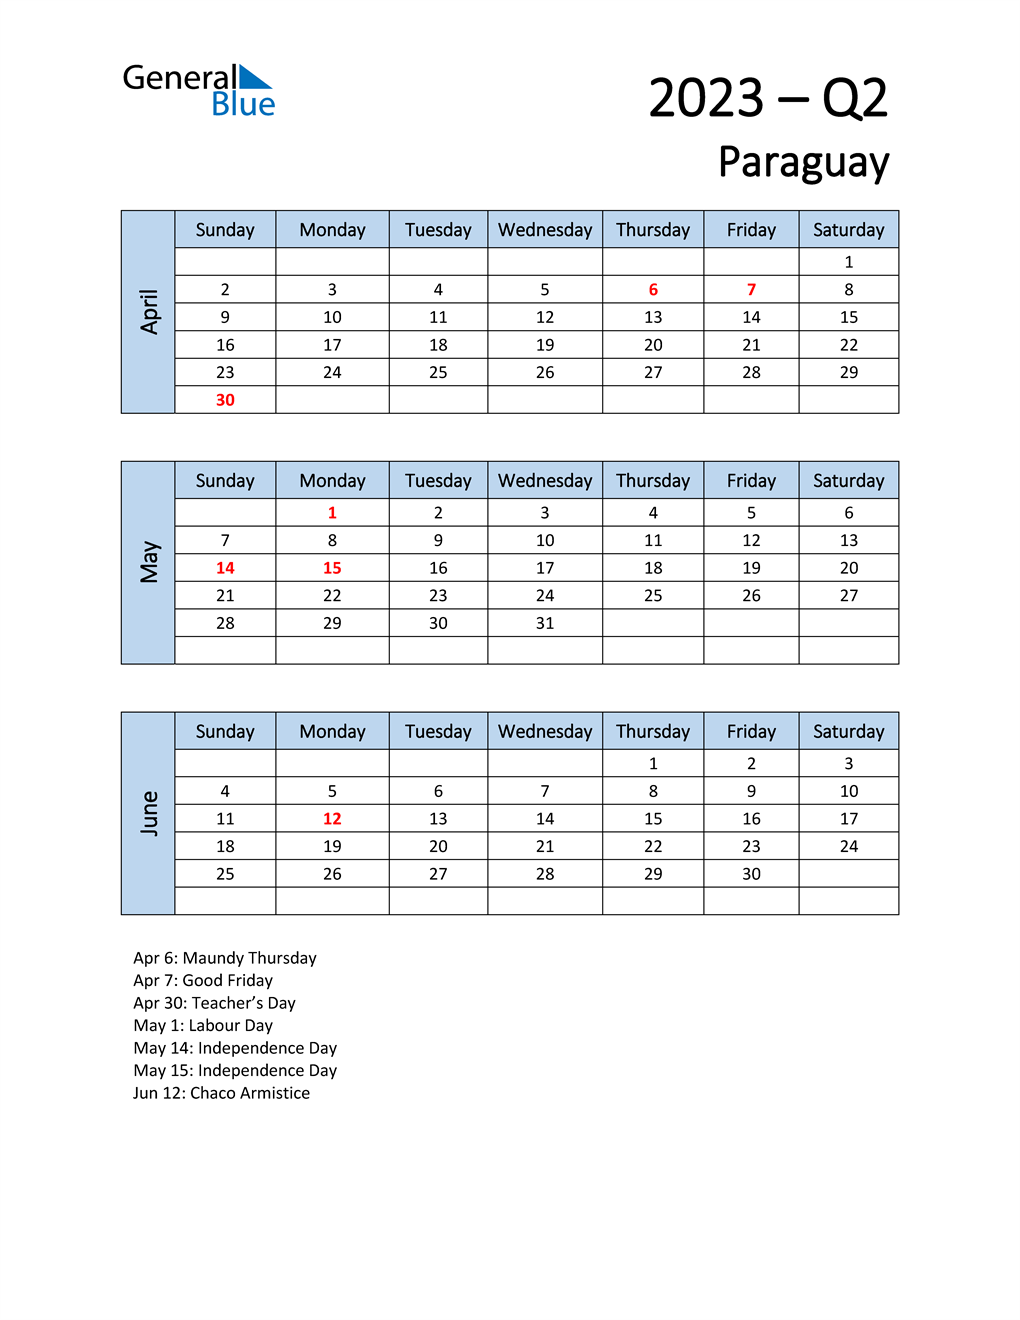  Free Q2 2023 Calendar for Paraguay